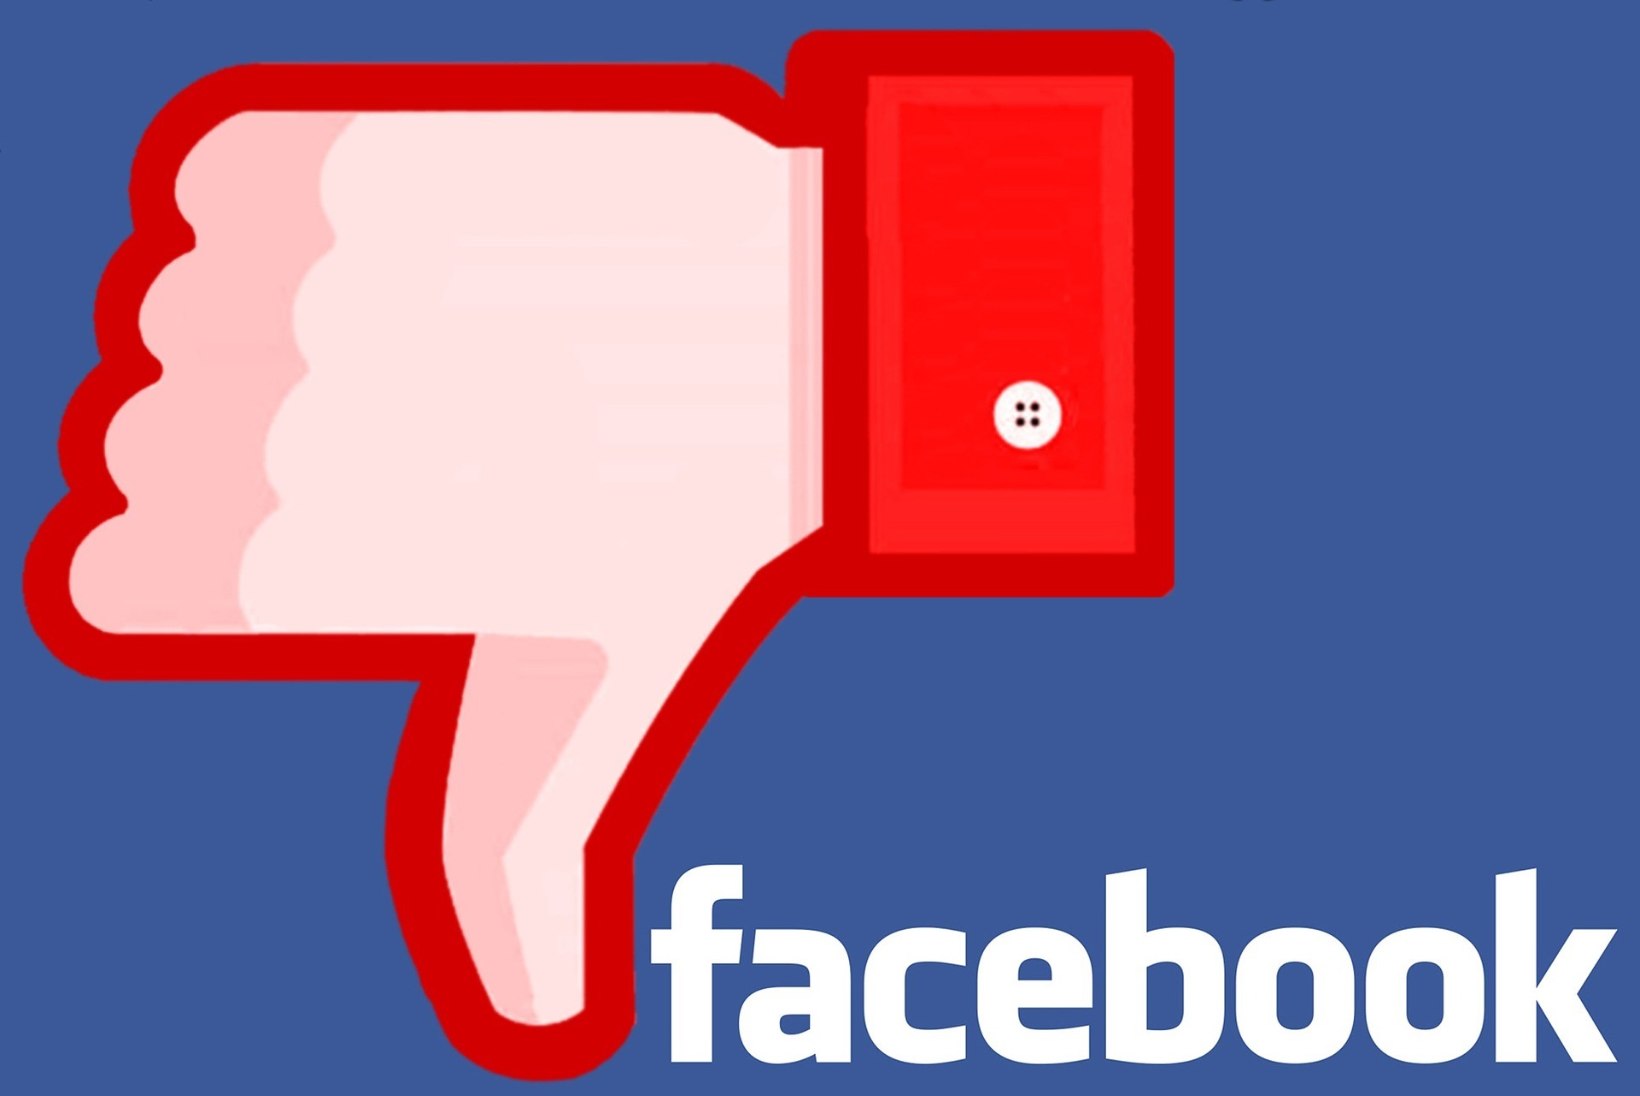 Andmelekkeskandaali valguses: kuidas Facebookis surra?